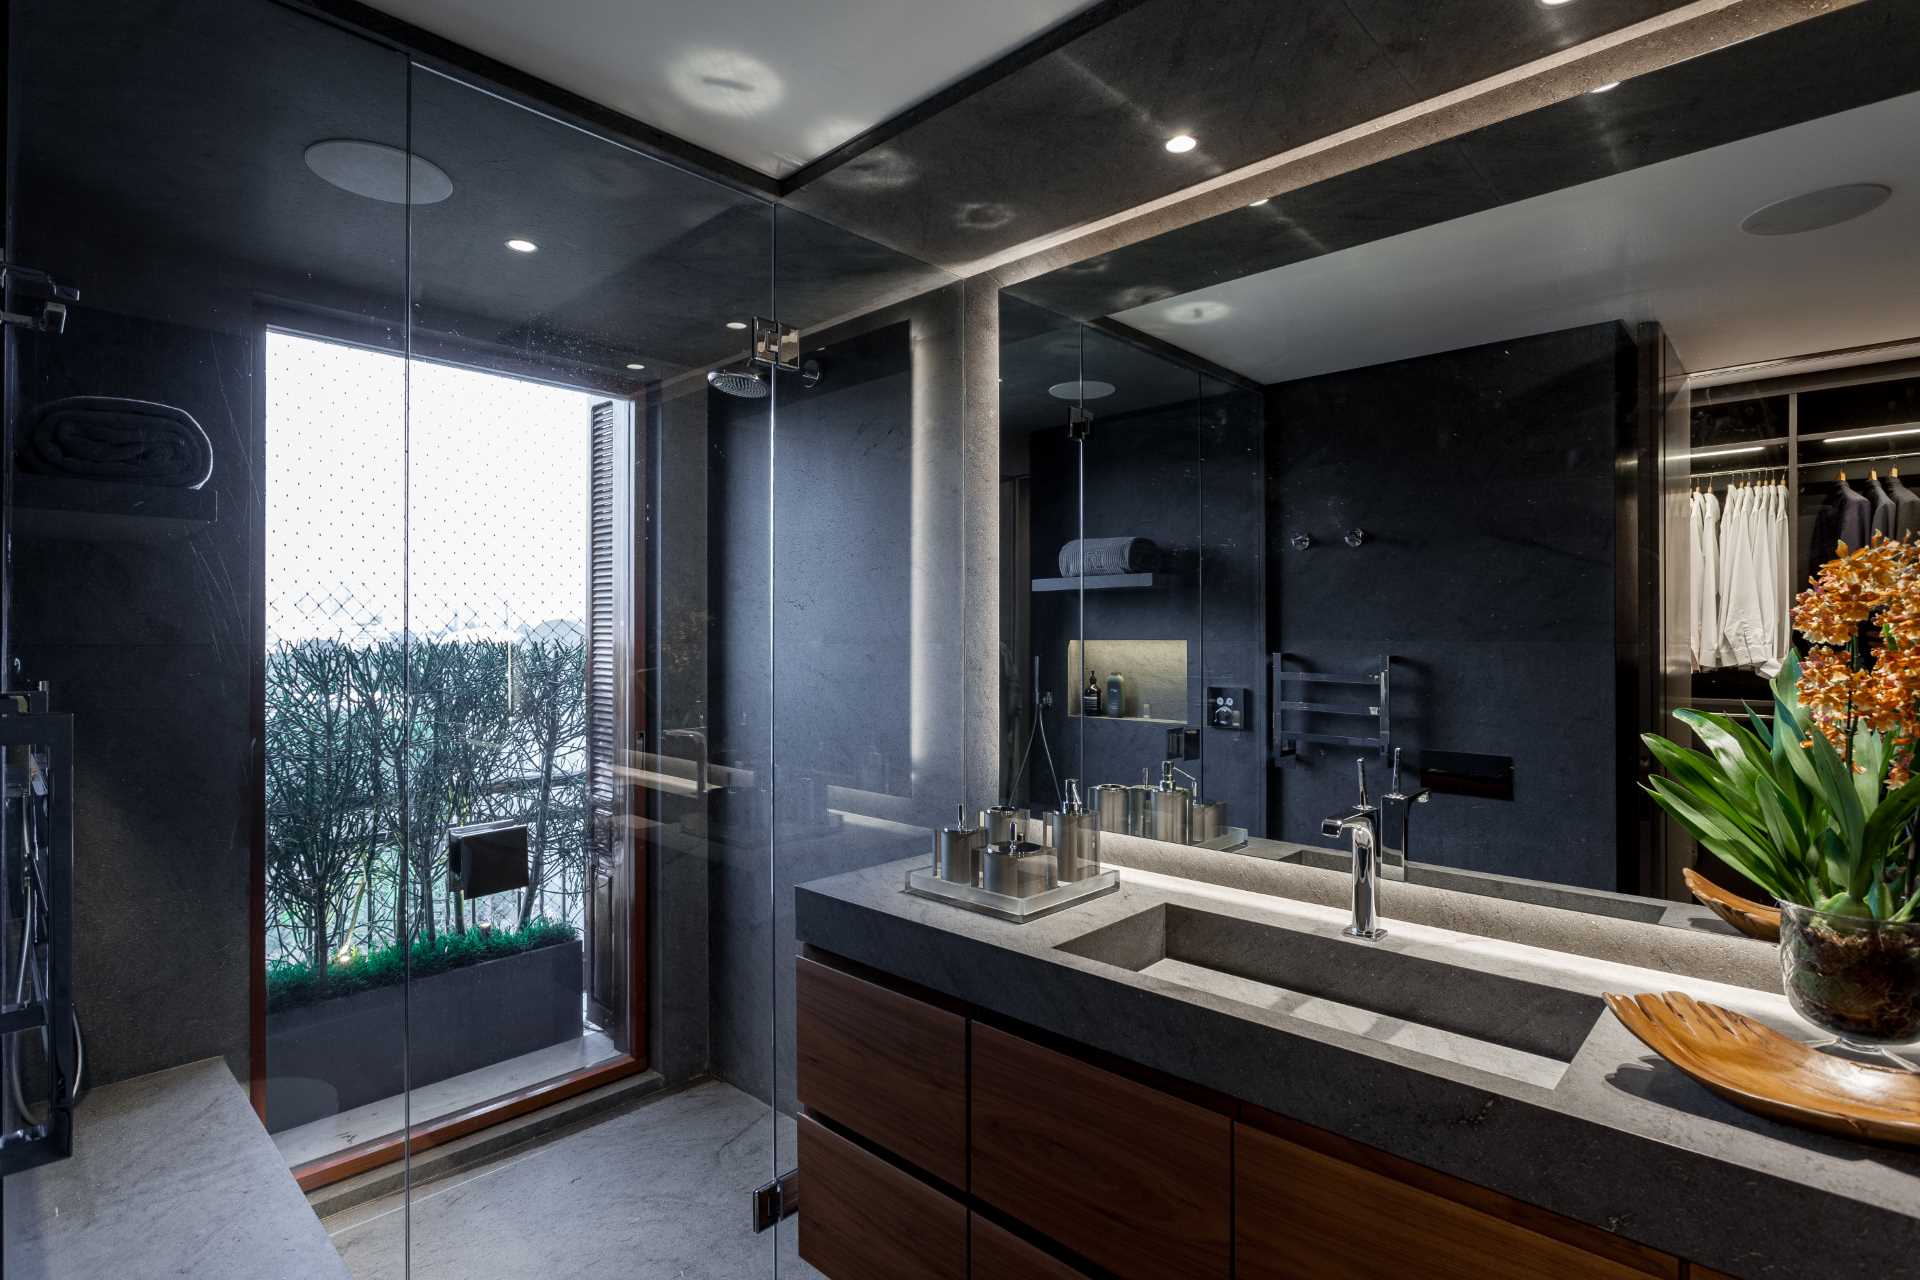 این حمام مدرن شامل دوش شیشه ای در کنار پنجره، روشویی چوبی تیره و یک آینه بزرگ است.